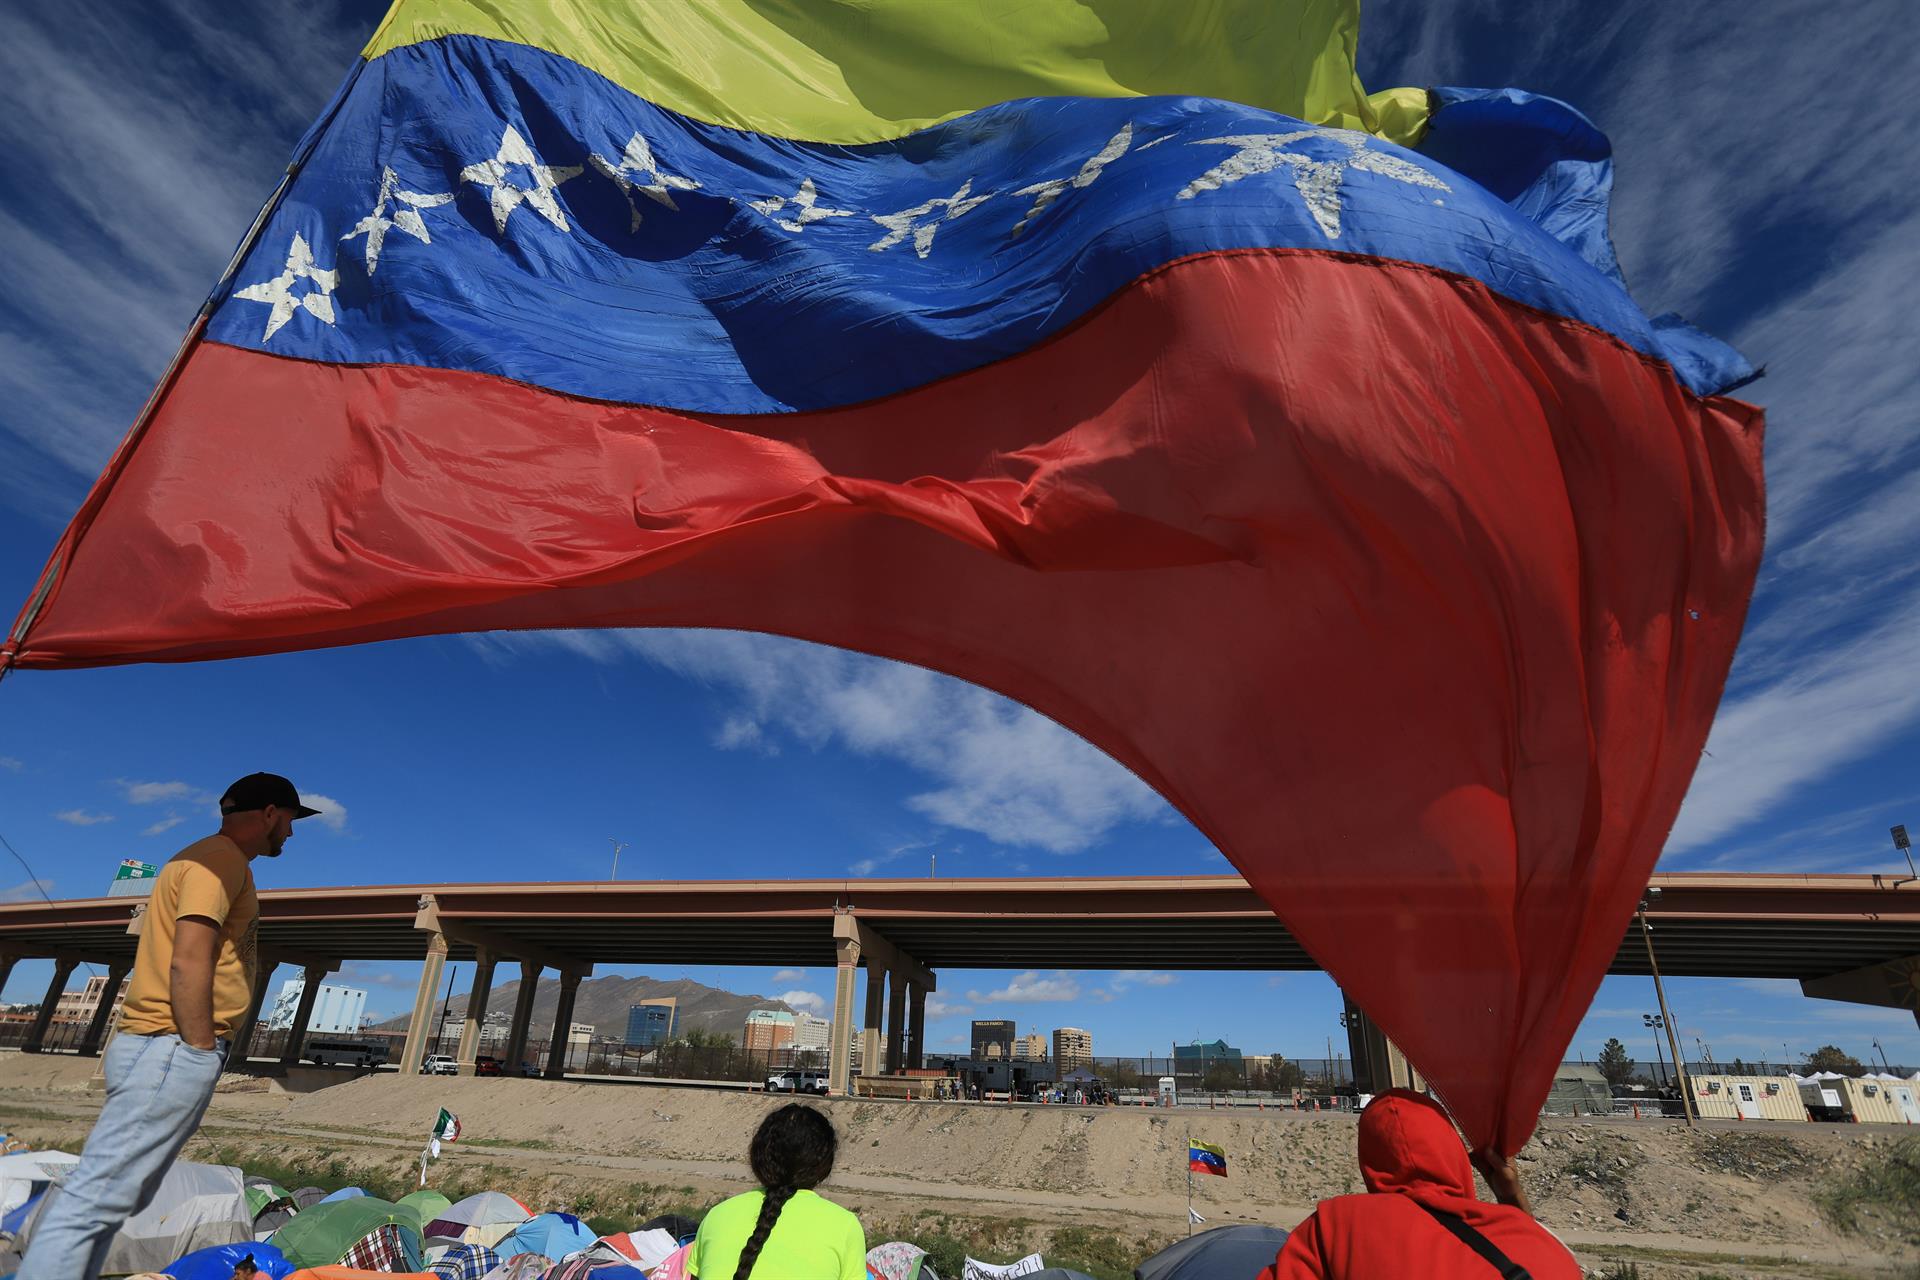 Parole humanitario para venezolanos en EEUU: Así son los documentos que recibirán los beneficiarios aprobados